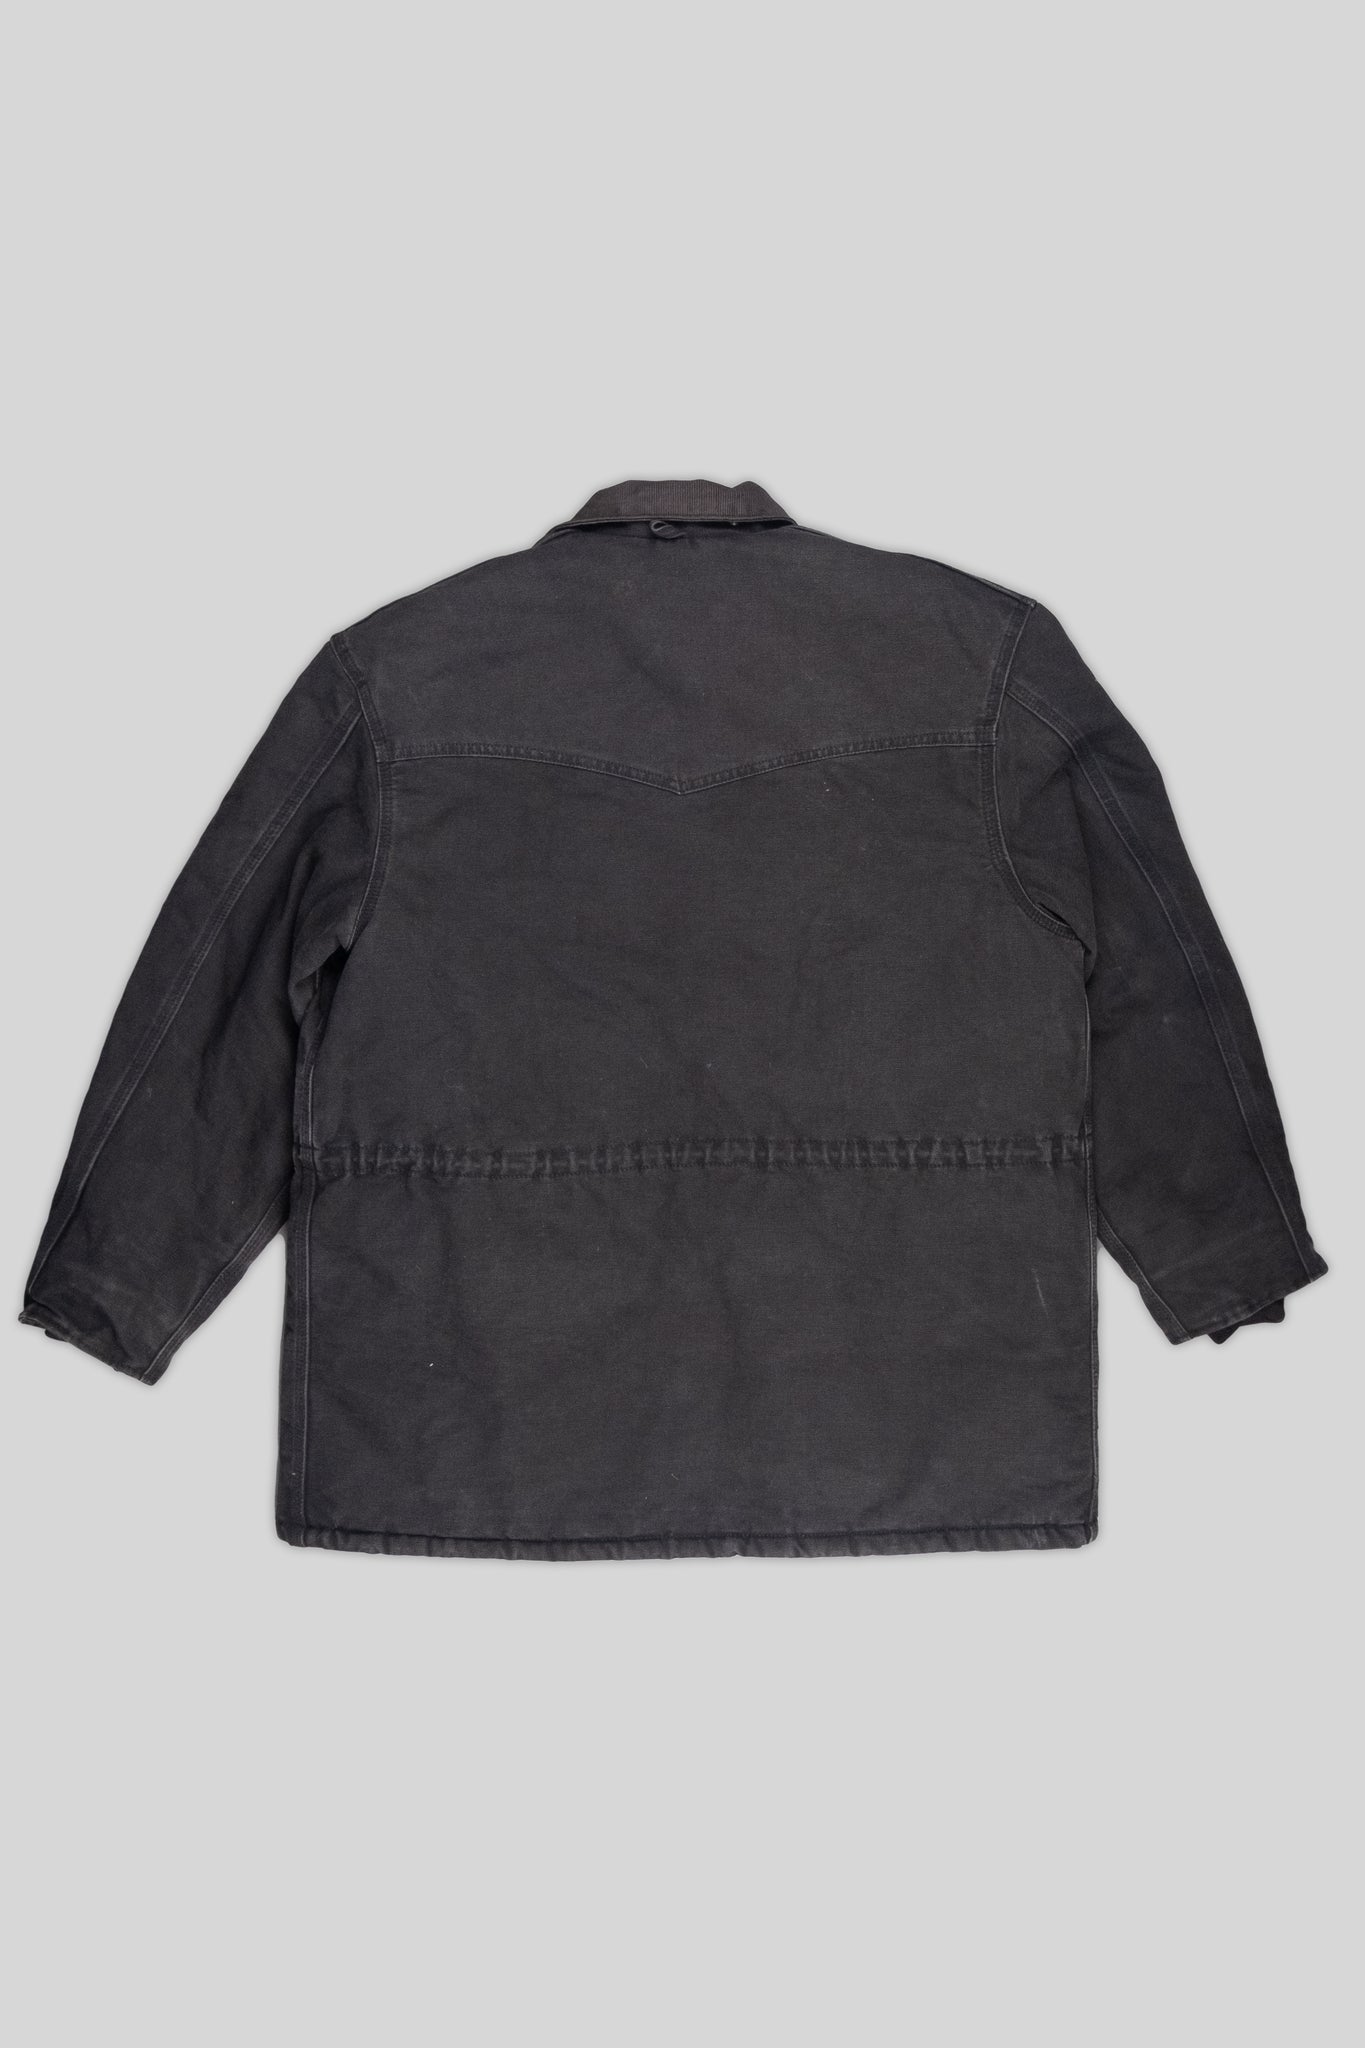 Carhartt Coat Black